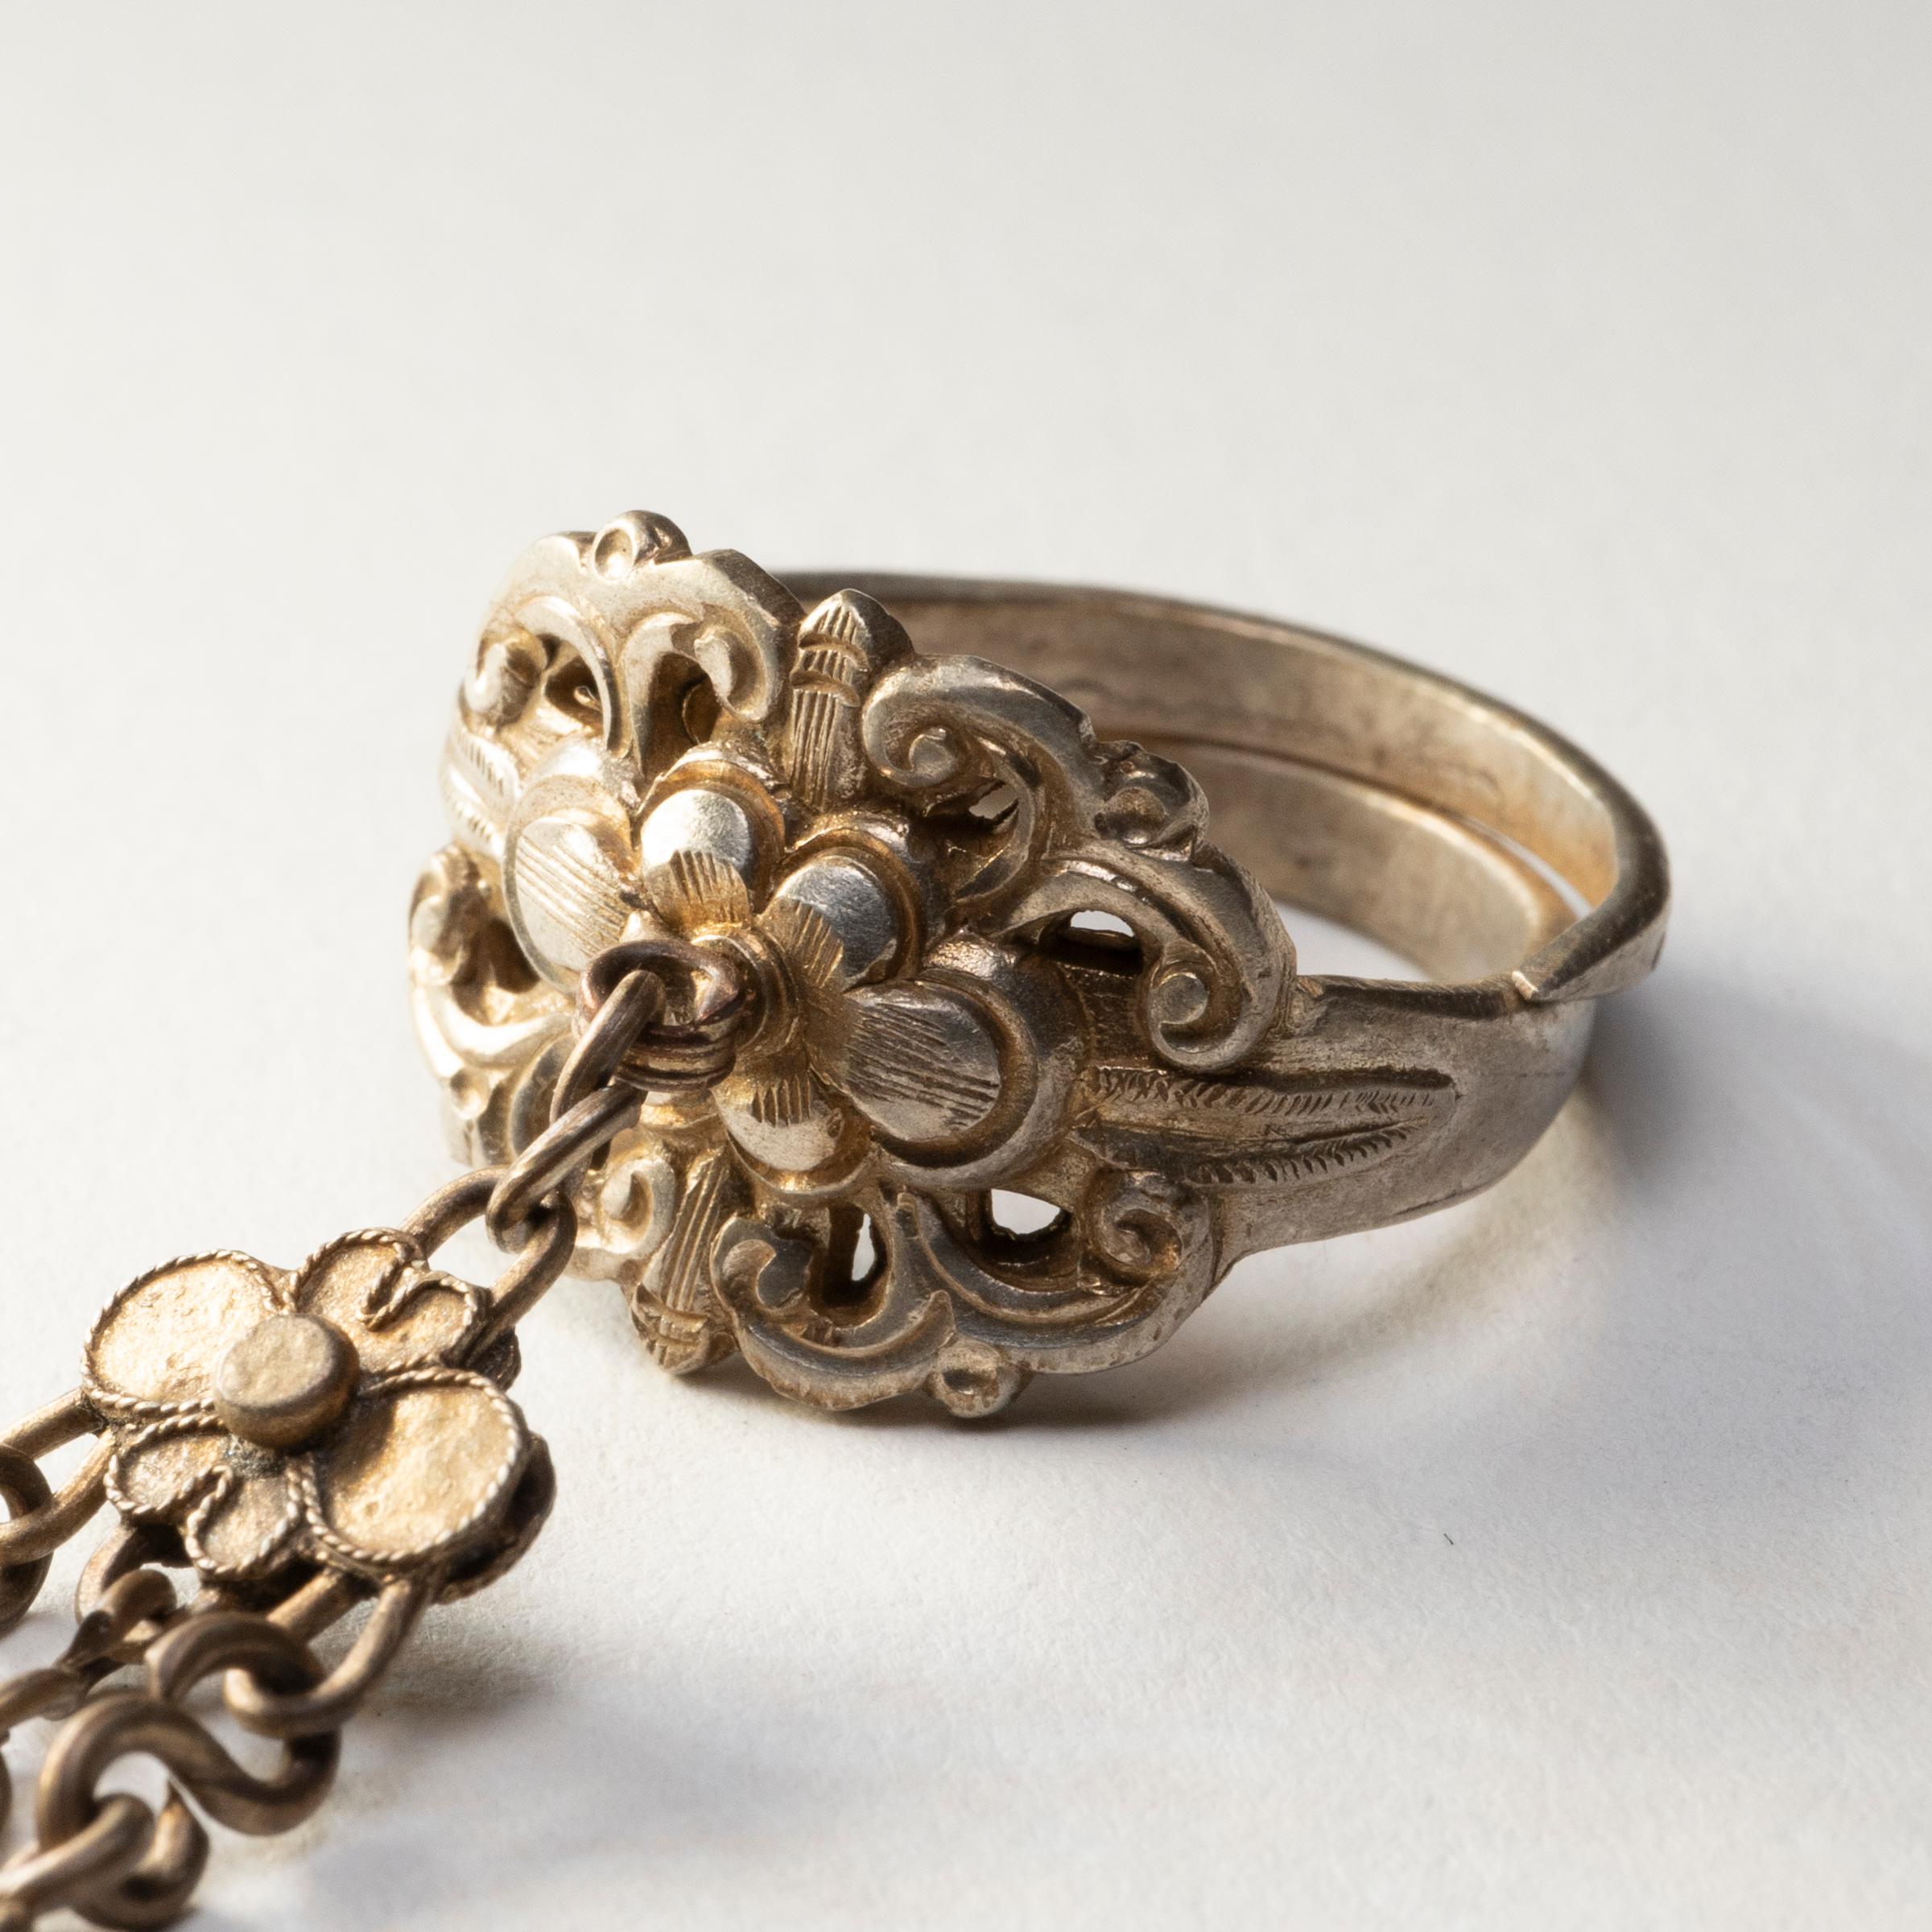 Dieser silberne Charme-Ring aus dem späten 19. Jahrhundert sollte seine Trägerin vor Unglück und bösen Geistern schützen. Der Ring ist mit einem Relief verziert, das eine stilisierte Blume zeigt, die von Blättern und Ranken umgeben ist. An der